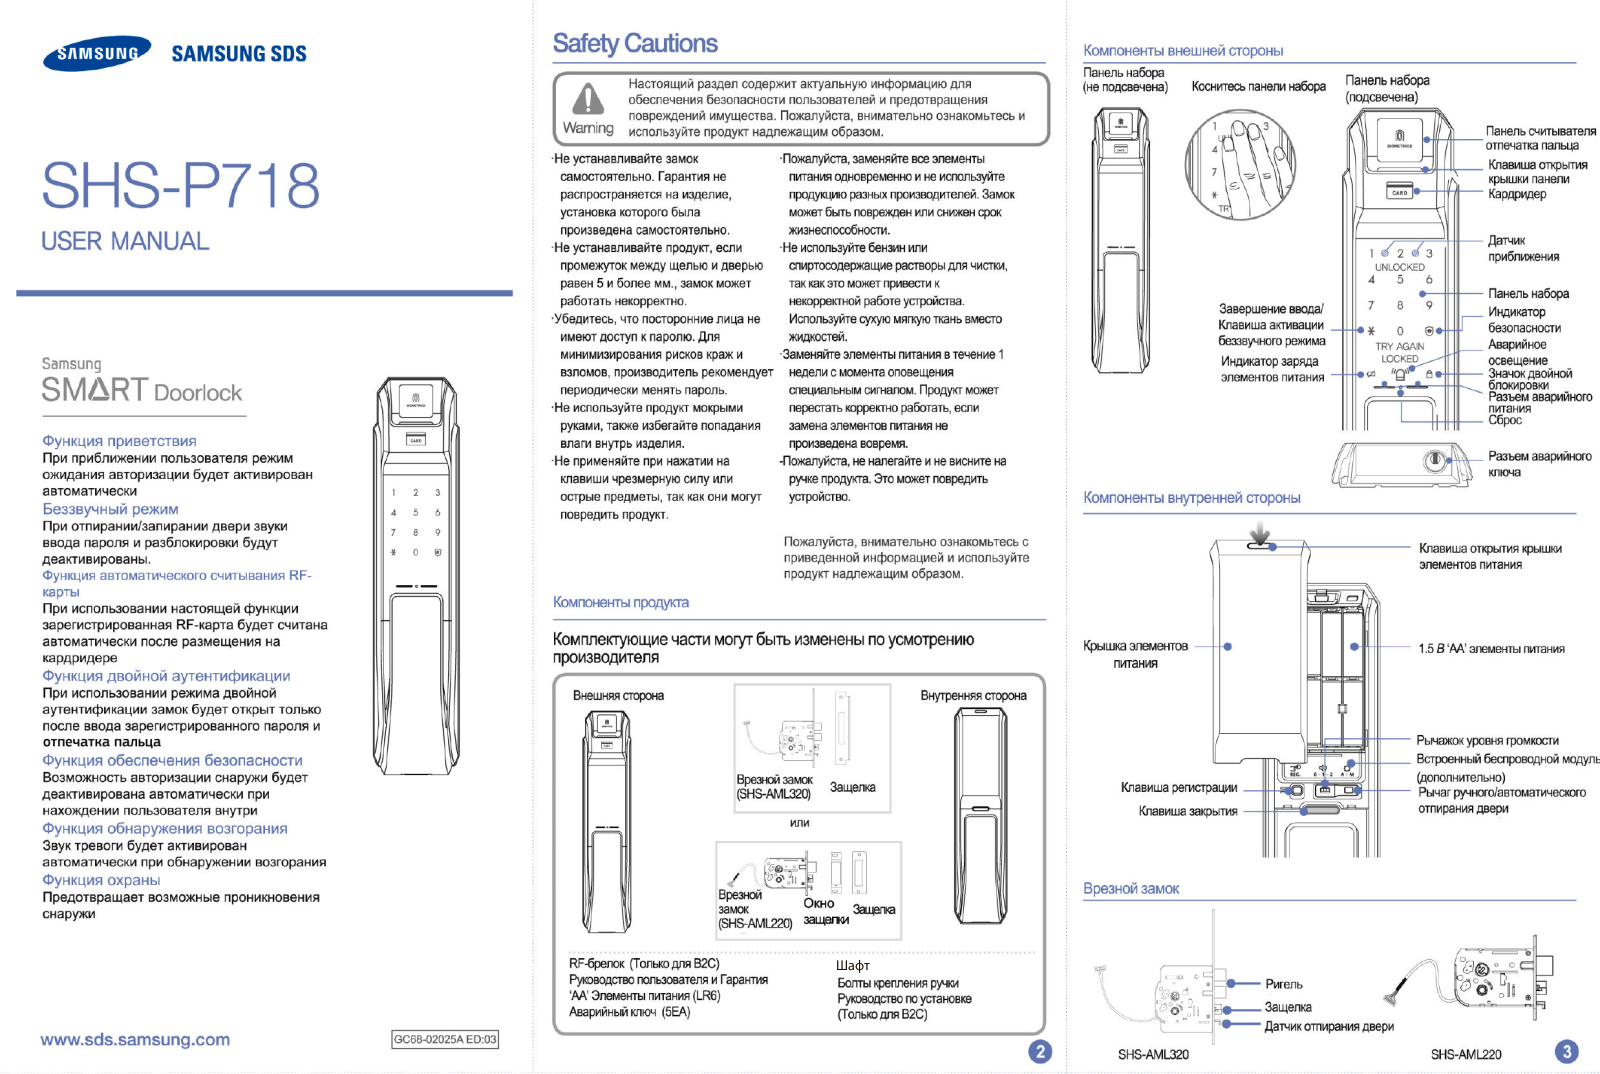 Samsung SHS-P718(на, SHS-P718 User Manual